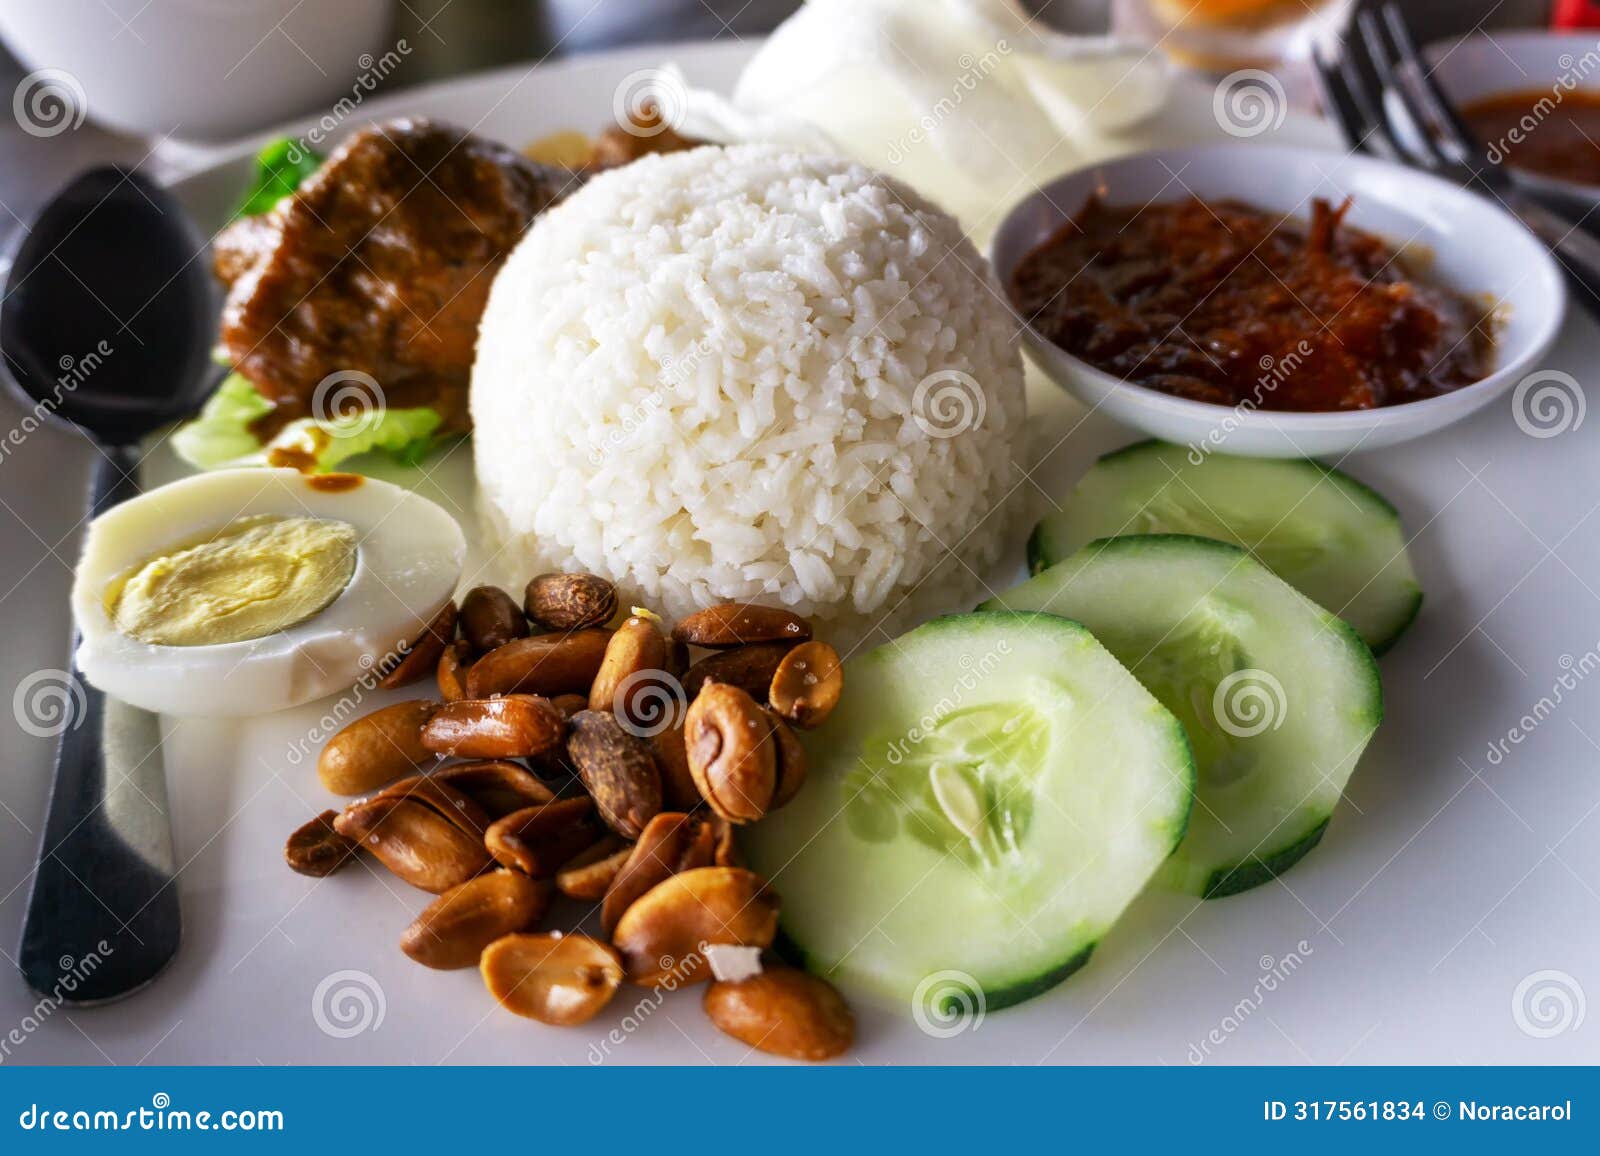 close up of nasi lemak malaysian food